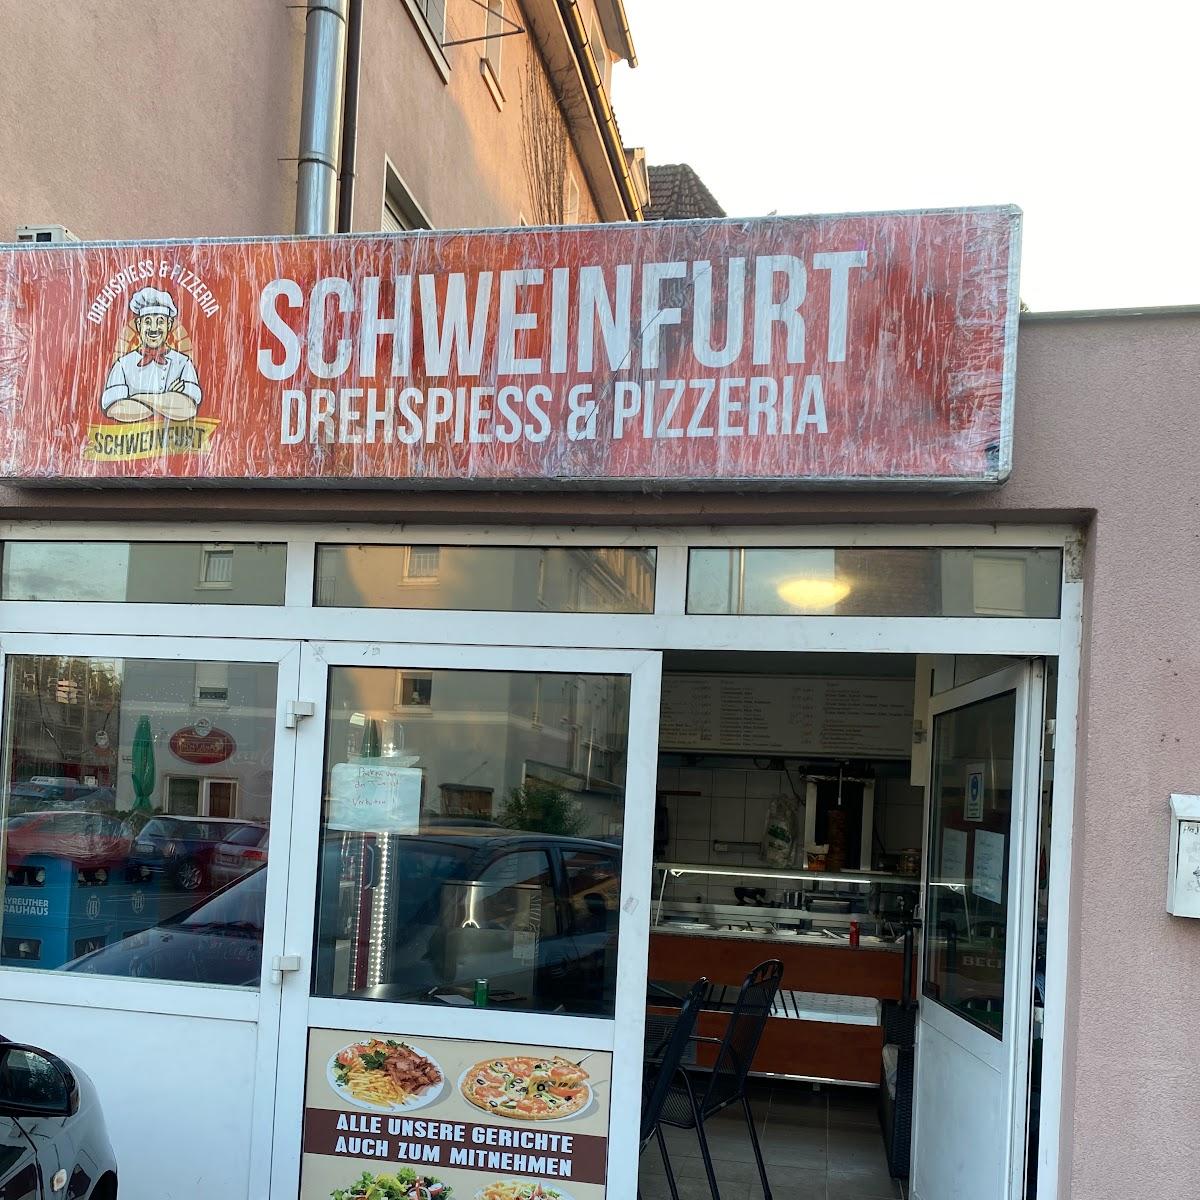 Restaurant "Döner" in Schweinfurt